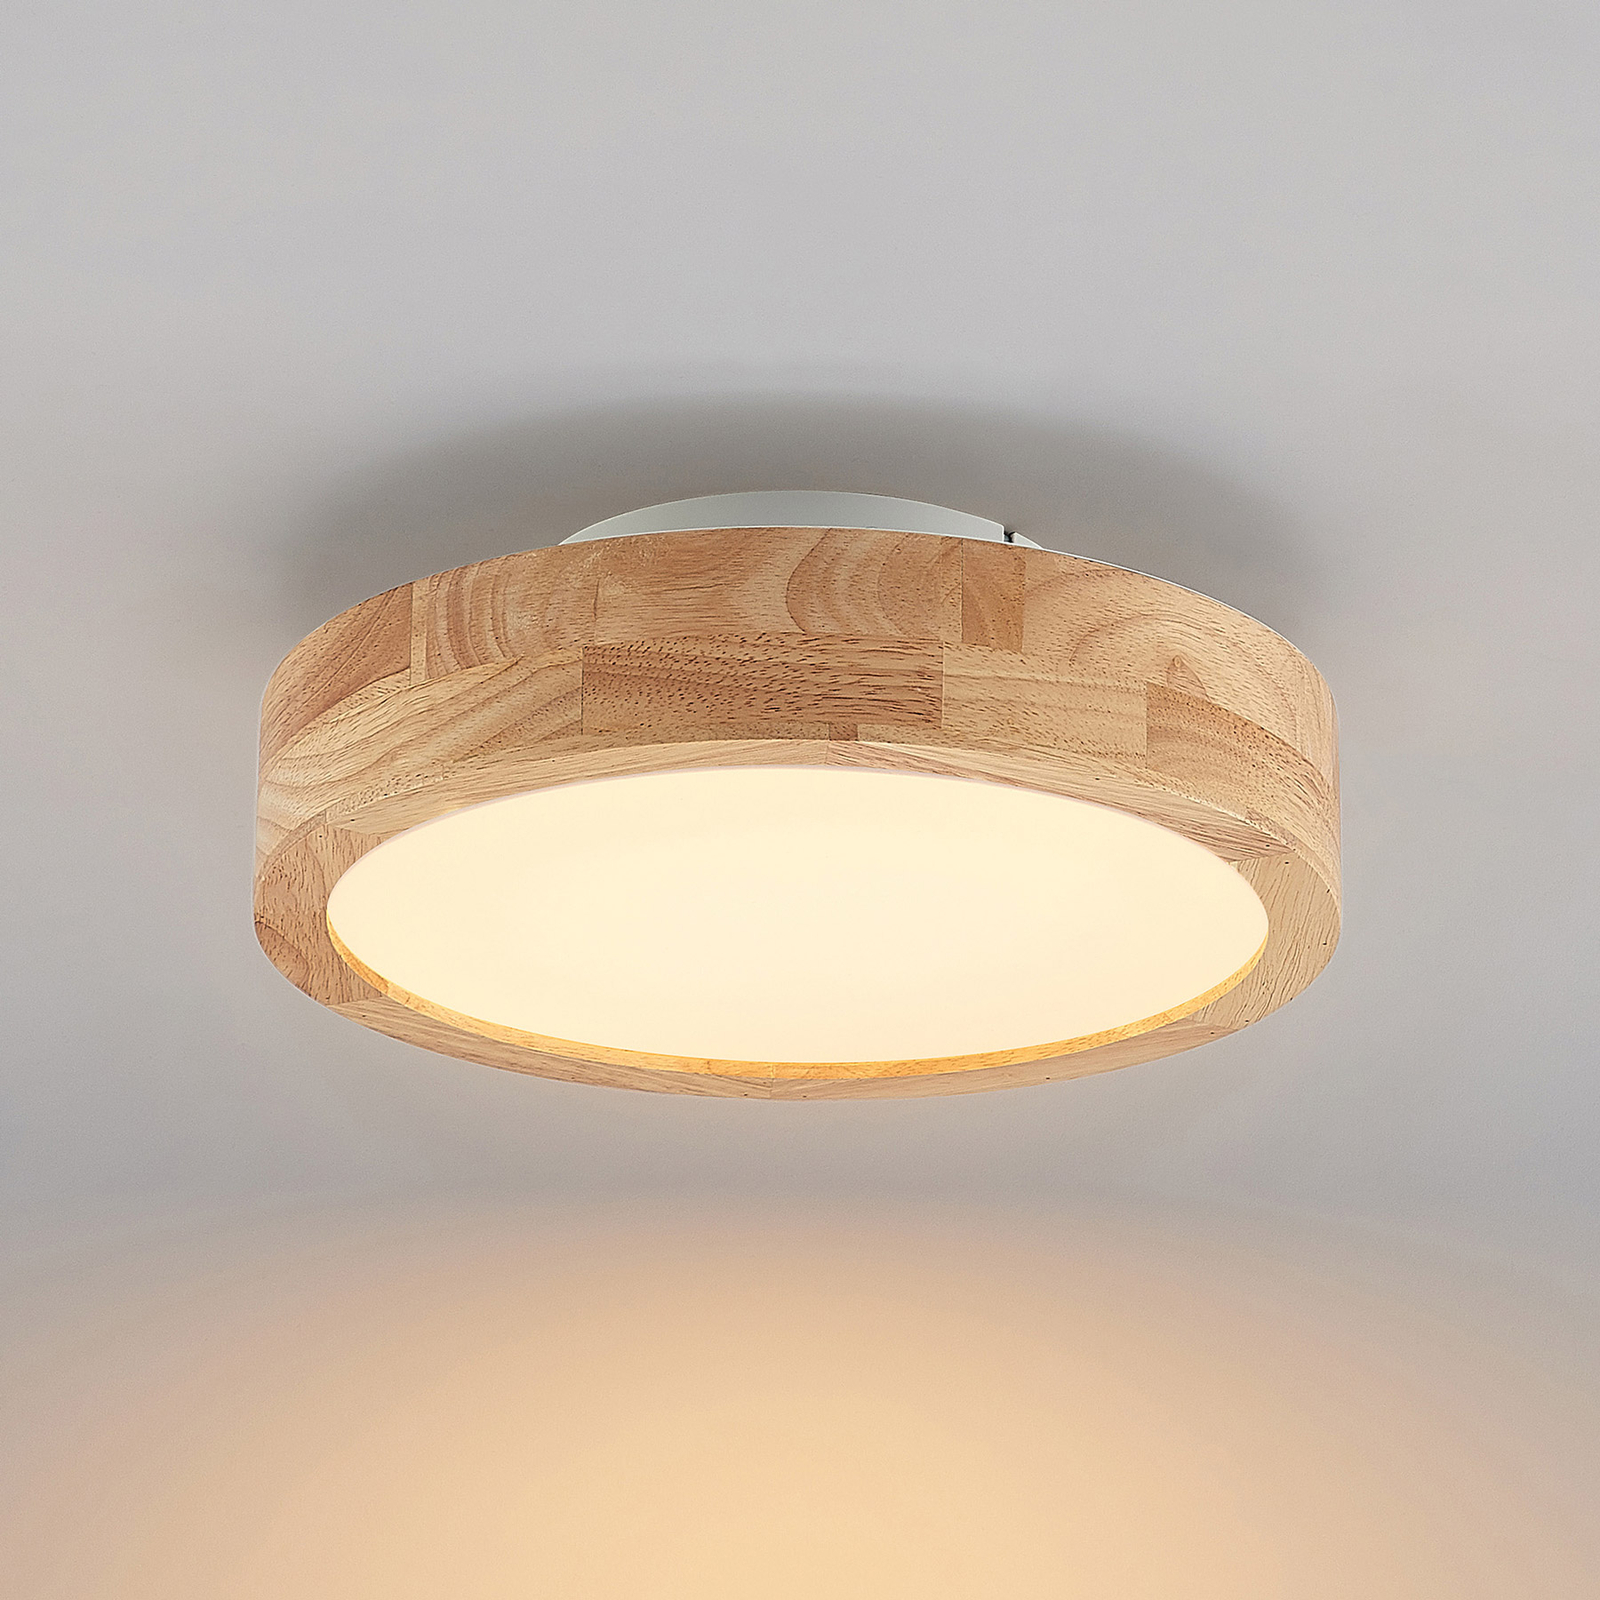 Lindby Lanira LED ceiling lamp made of oak, 30 cm